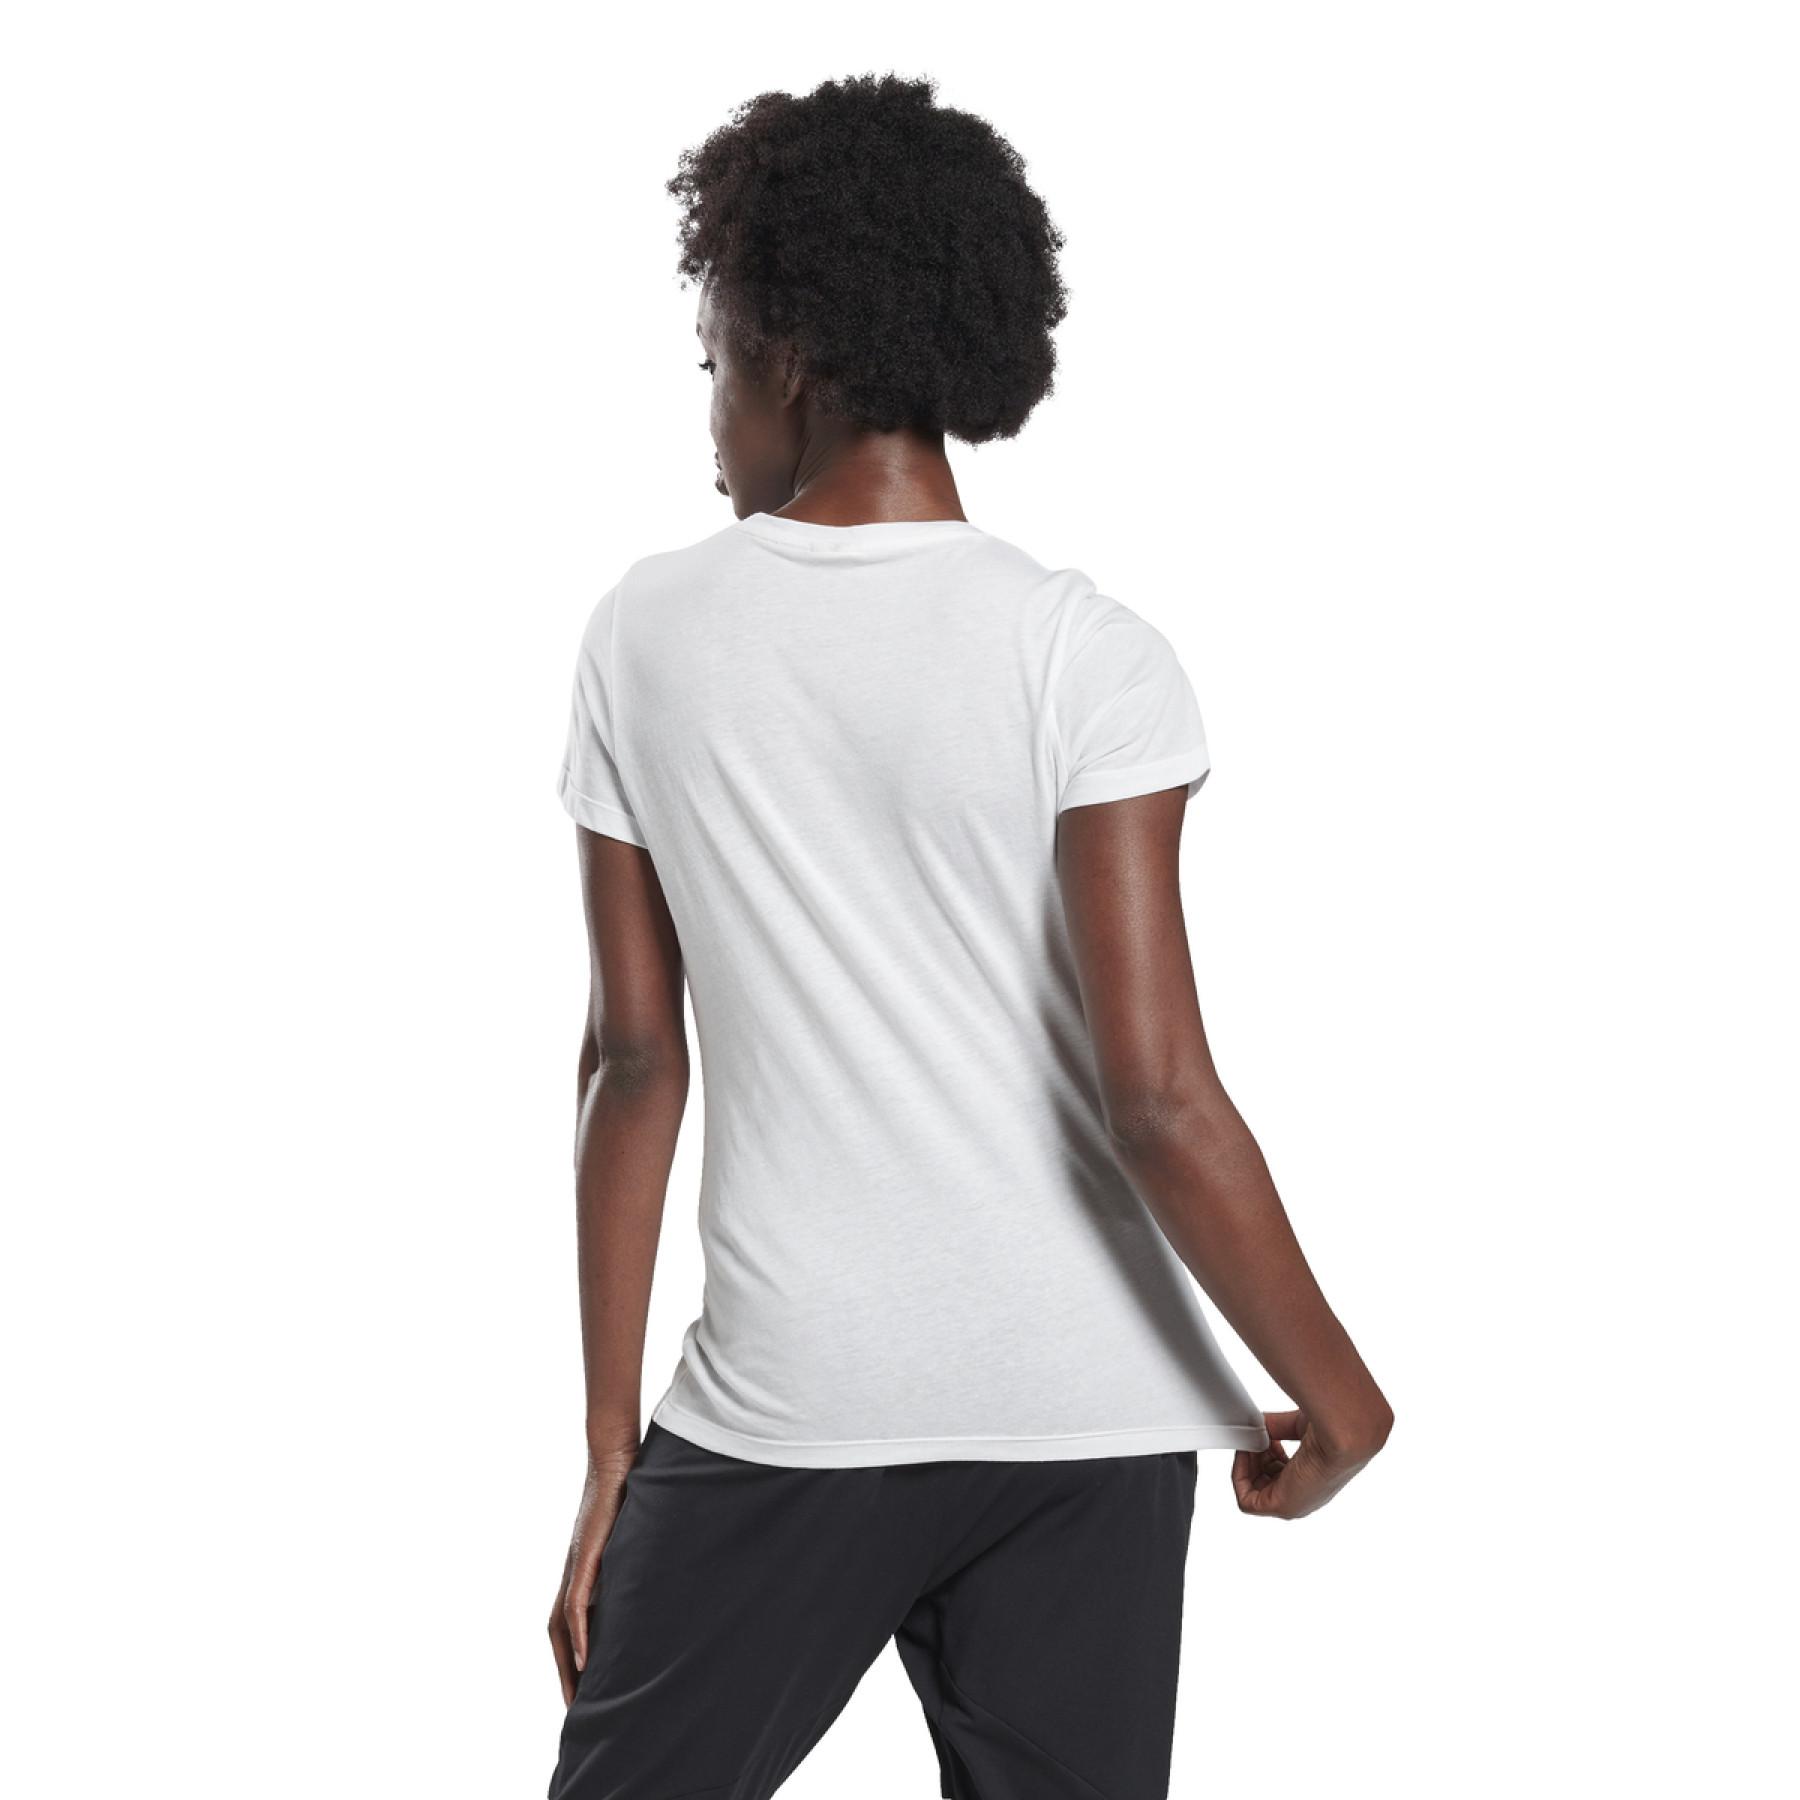 T-shirt femme Reebok GB Cotton Vector